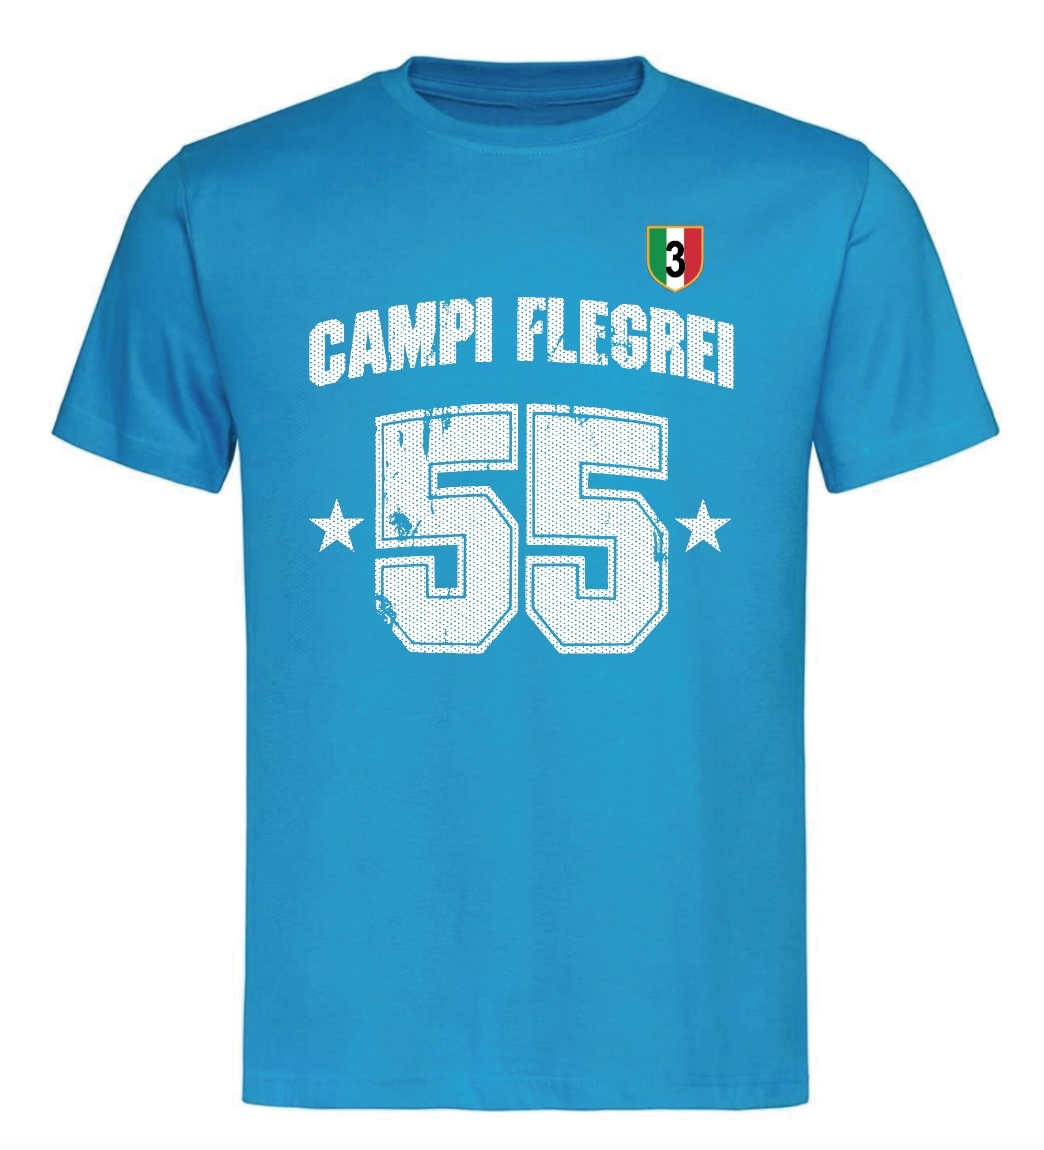 NAPLES CAMPIONE - Campi Flegrei 55 written Curvato + shield